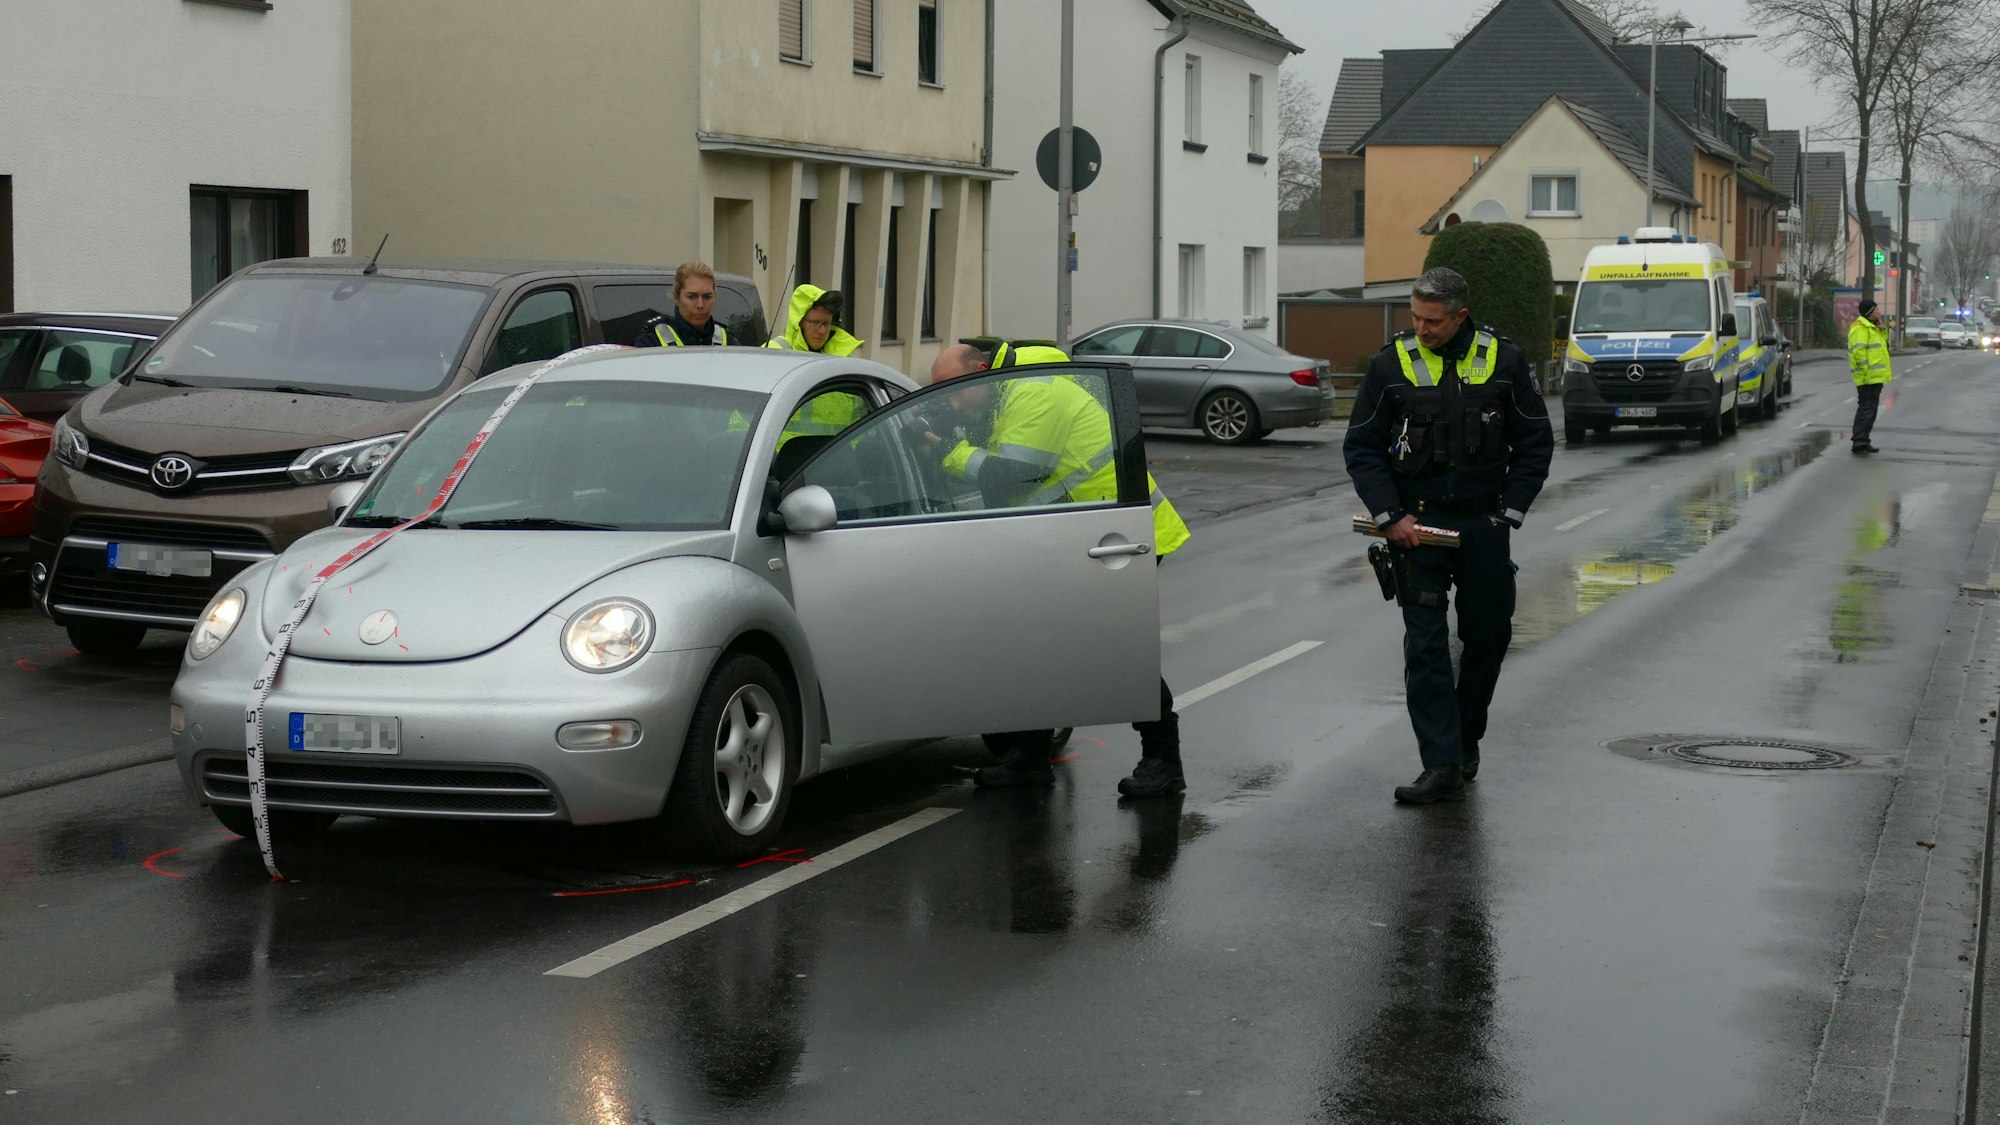 Polizeibeamte sichern Spuren an einem silbernen VW-Beetle. Daneben steht ein brauner Van am Straßenrand.